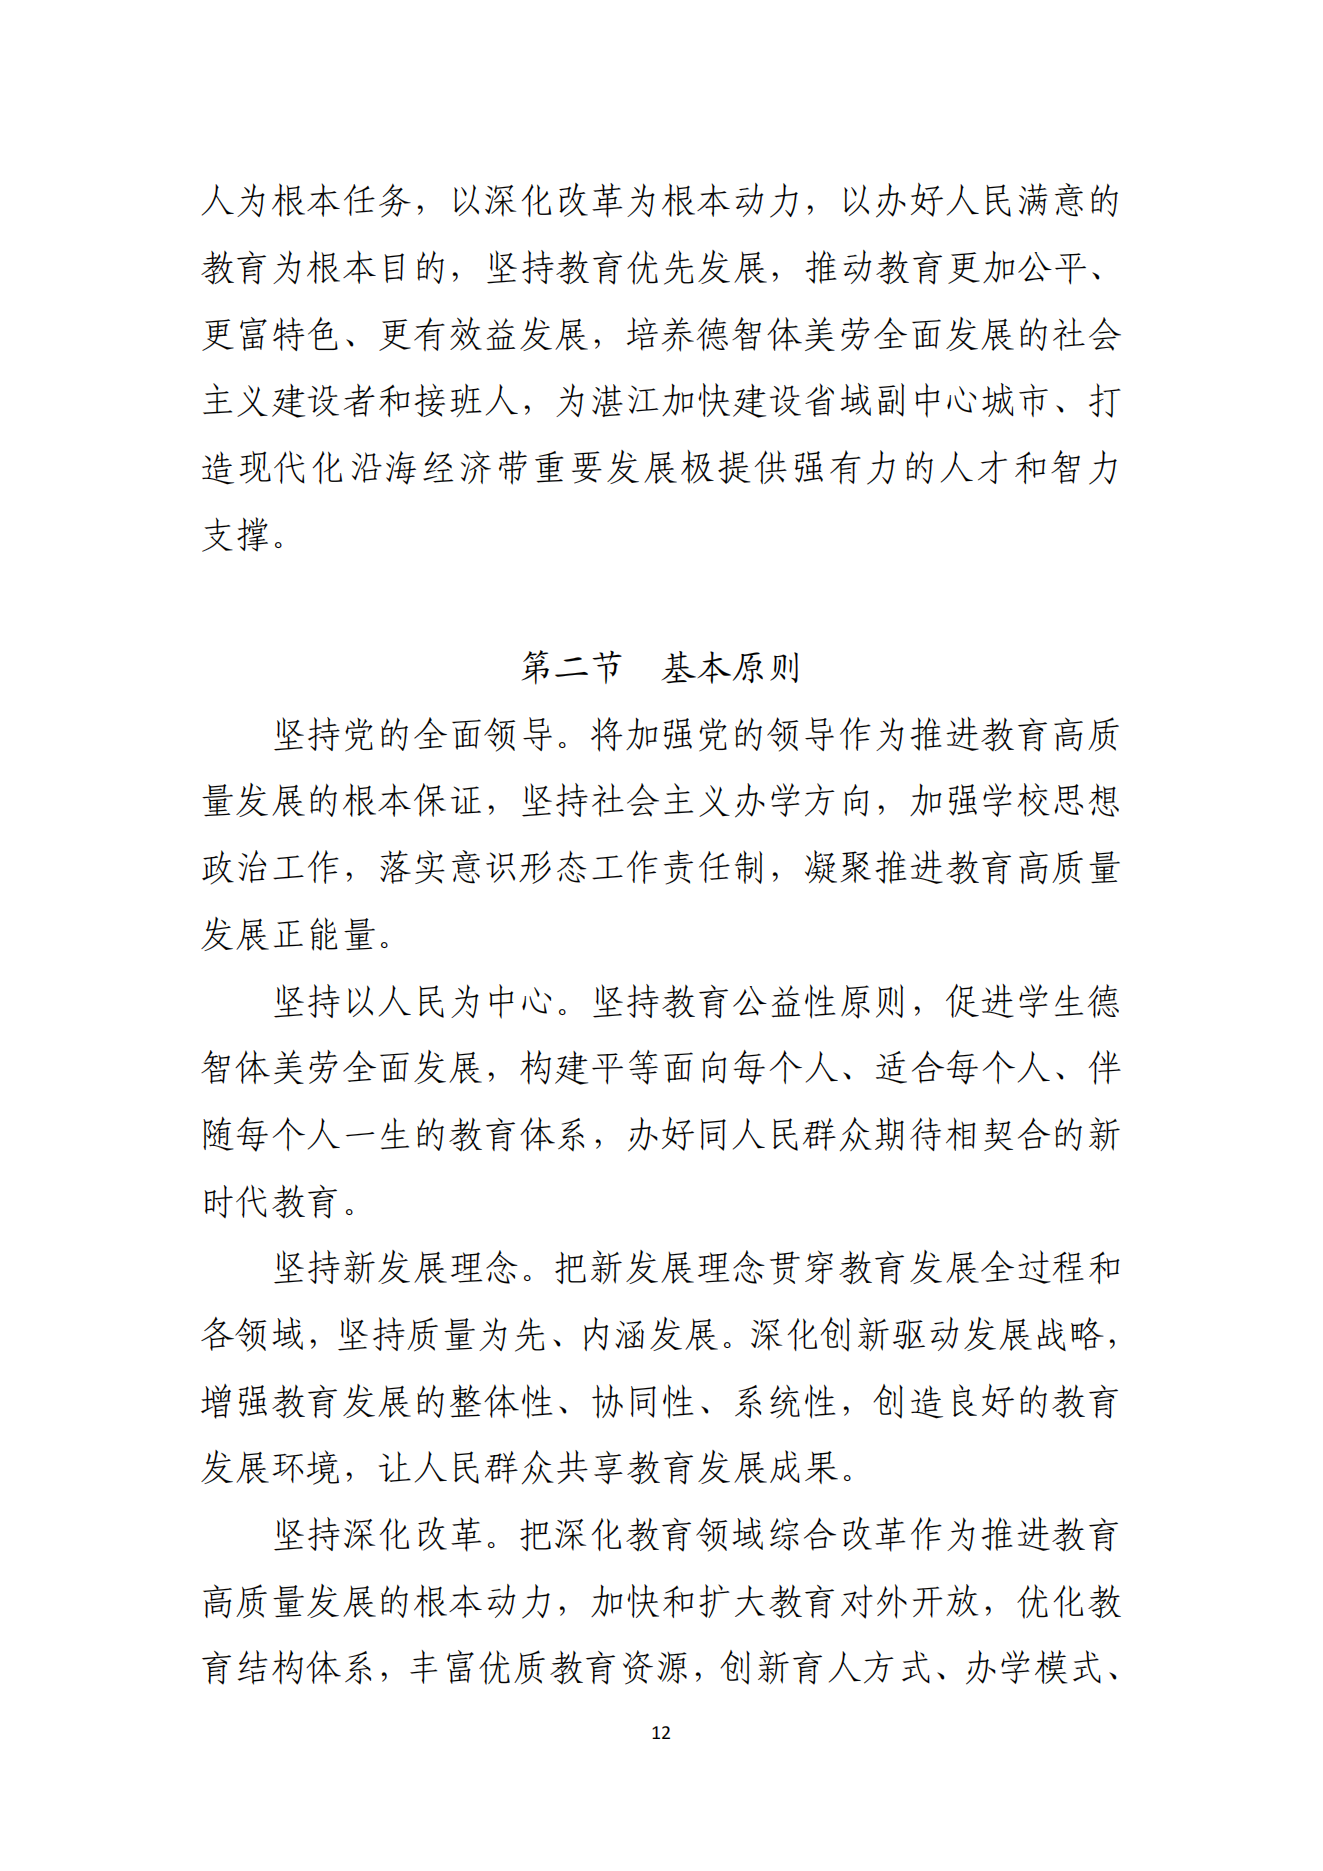 湛江市人民政府办公室关于印发湛江市教育发展“十四五”规划的通知_11.png